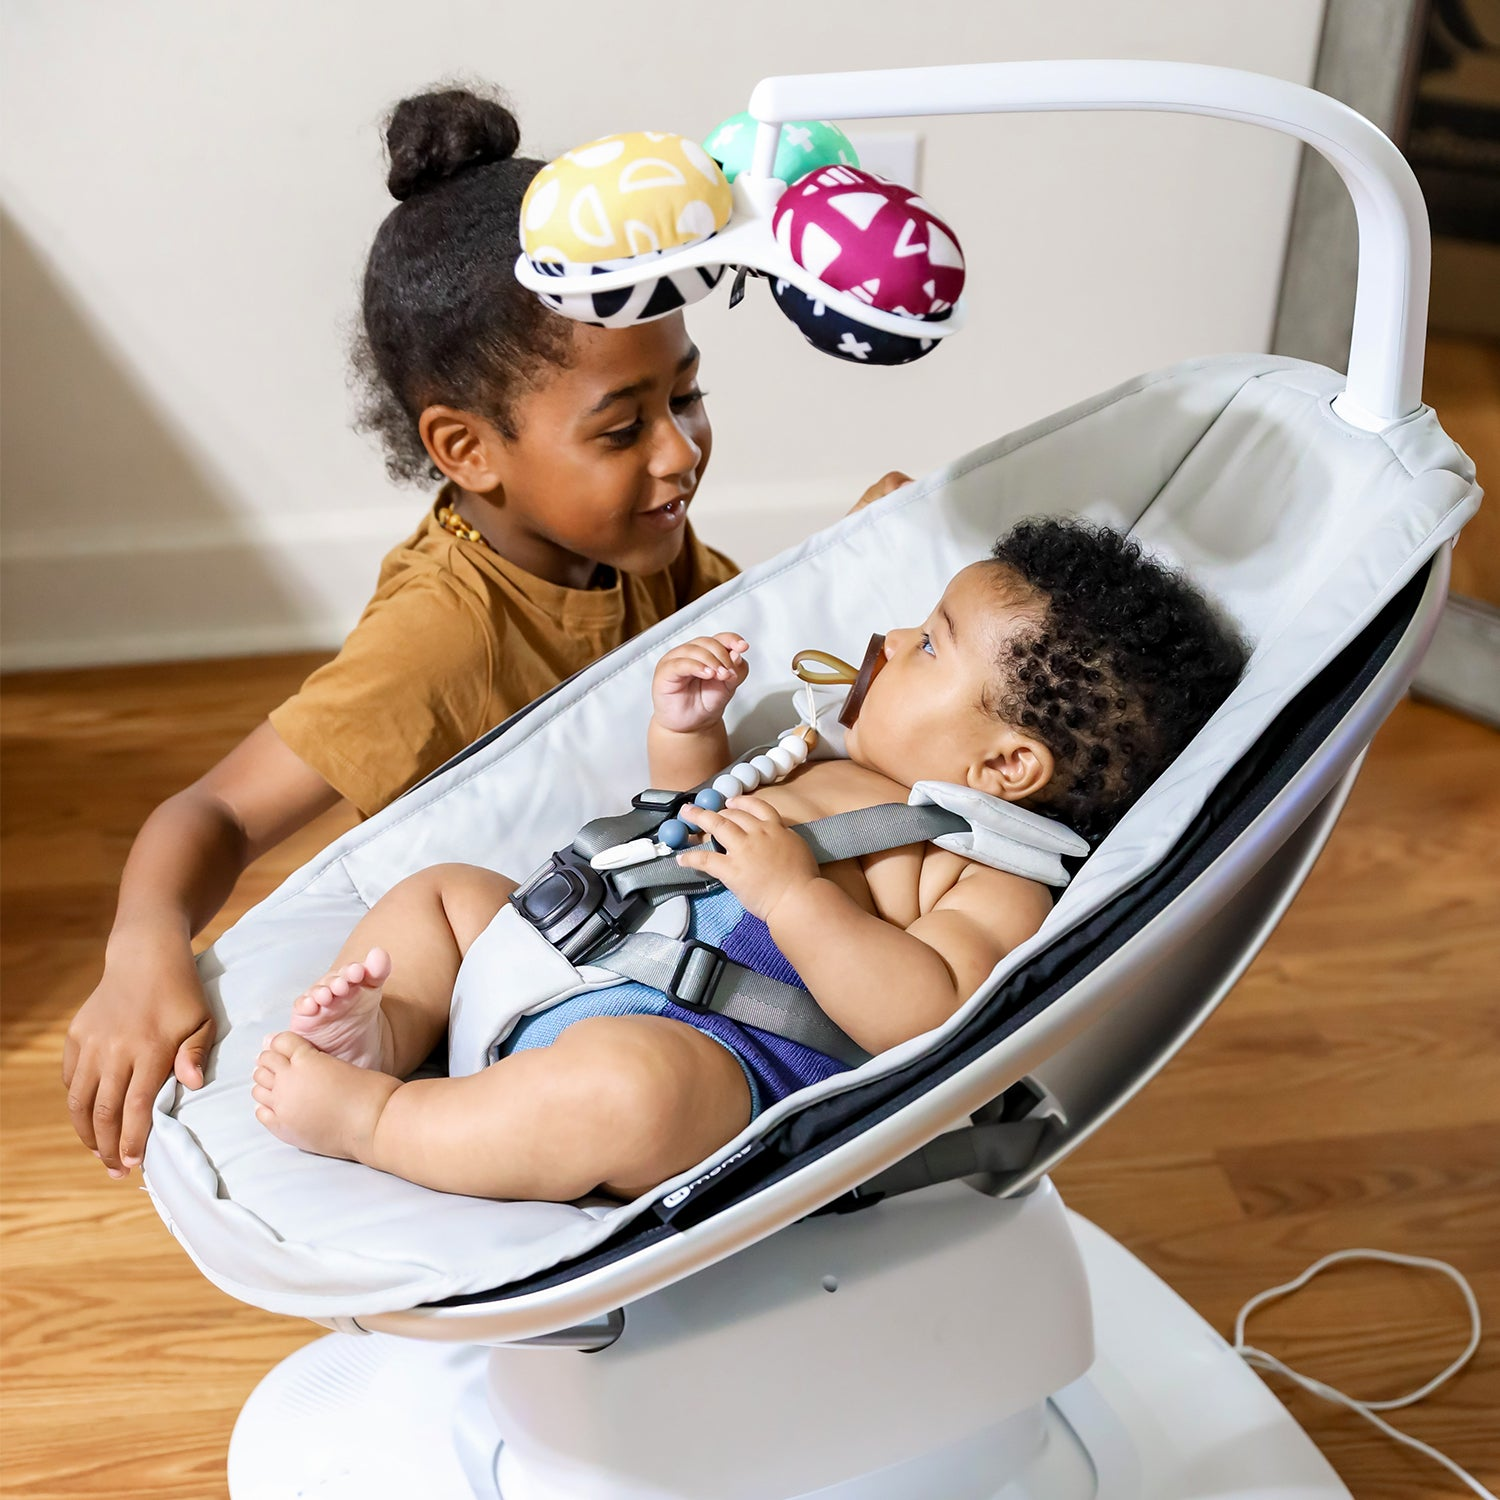 Columpio para bebé multimovimiento, Bluetooth habilitado con 5 movimientos únicos📦 Envío rápido 🚚 Envío gratuito 🔒 Pago seguro.